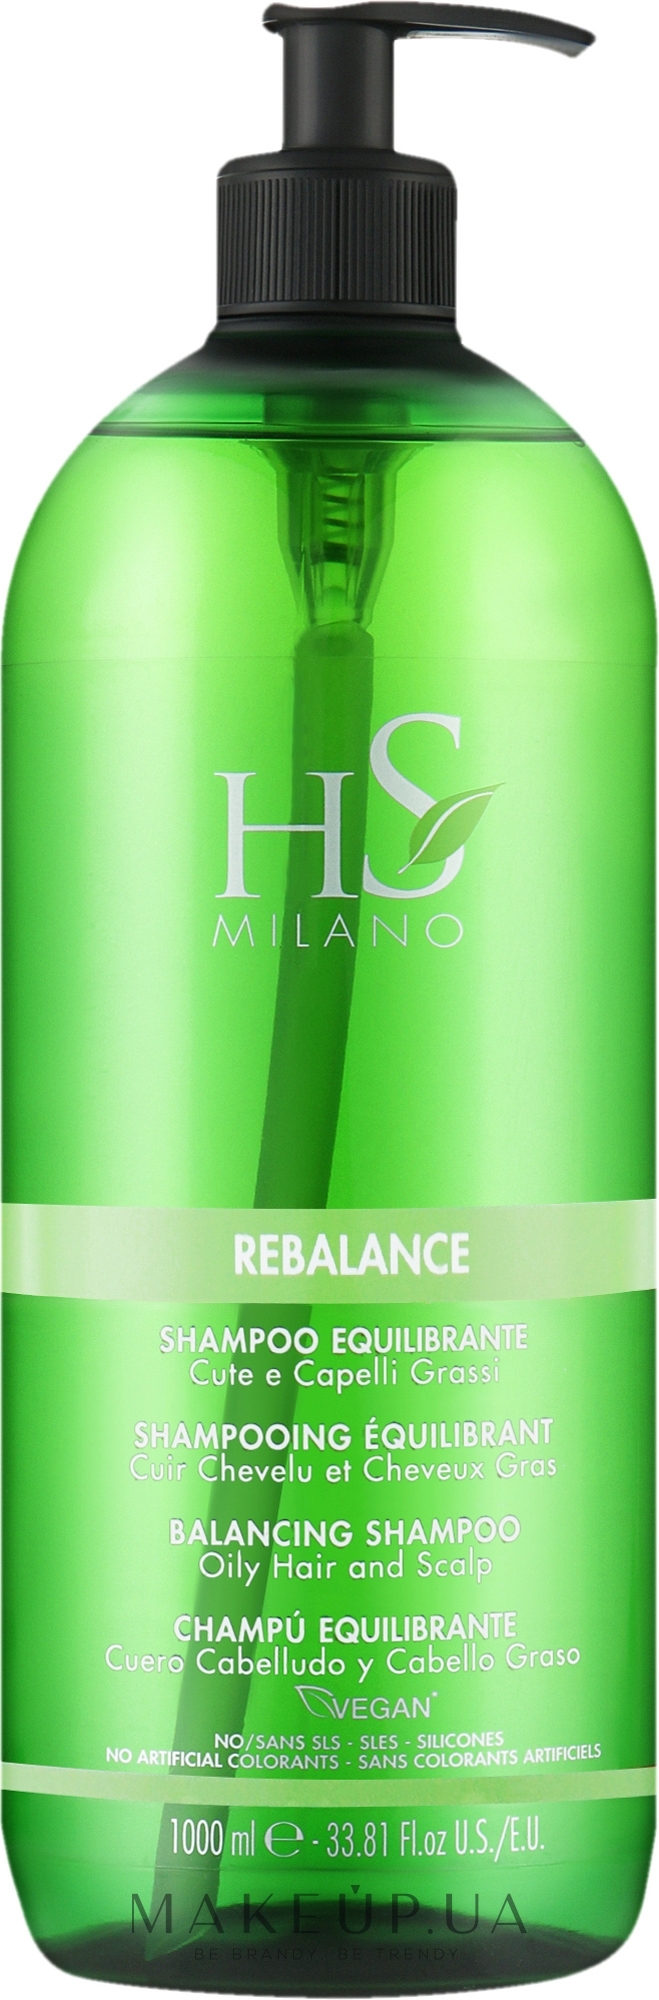 Себорегулирующий шампунь для жирных волос - HS Milano Rebalance Shampoo — фото 1000ml